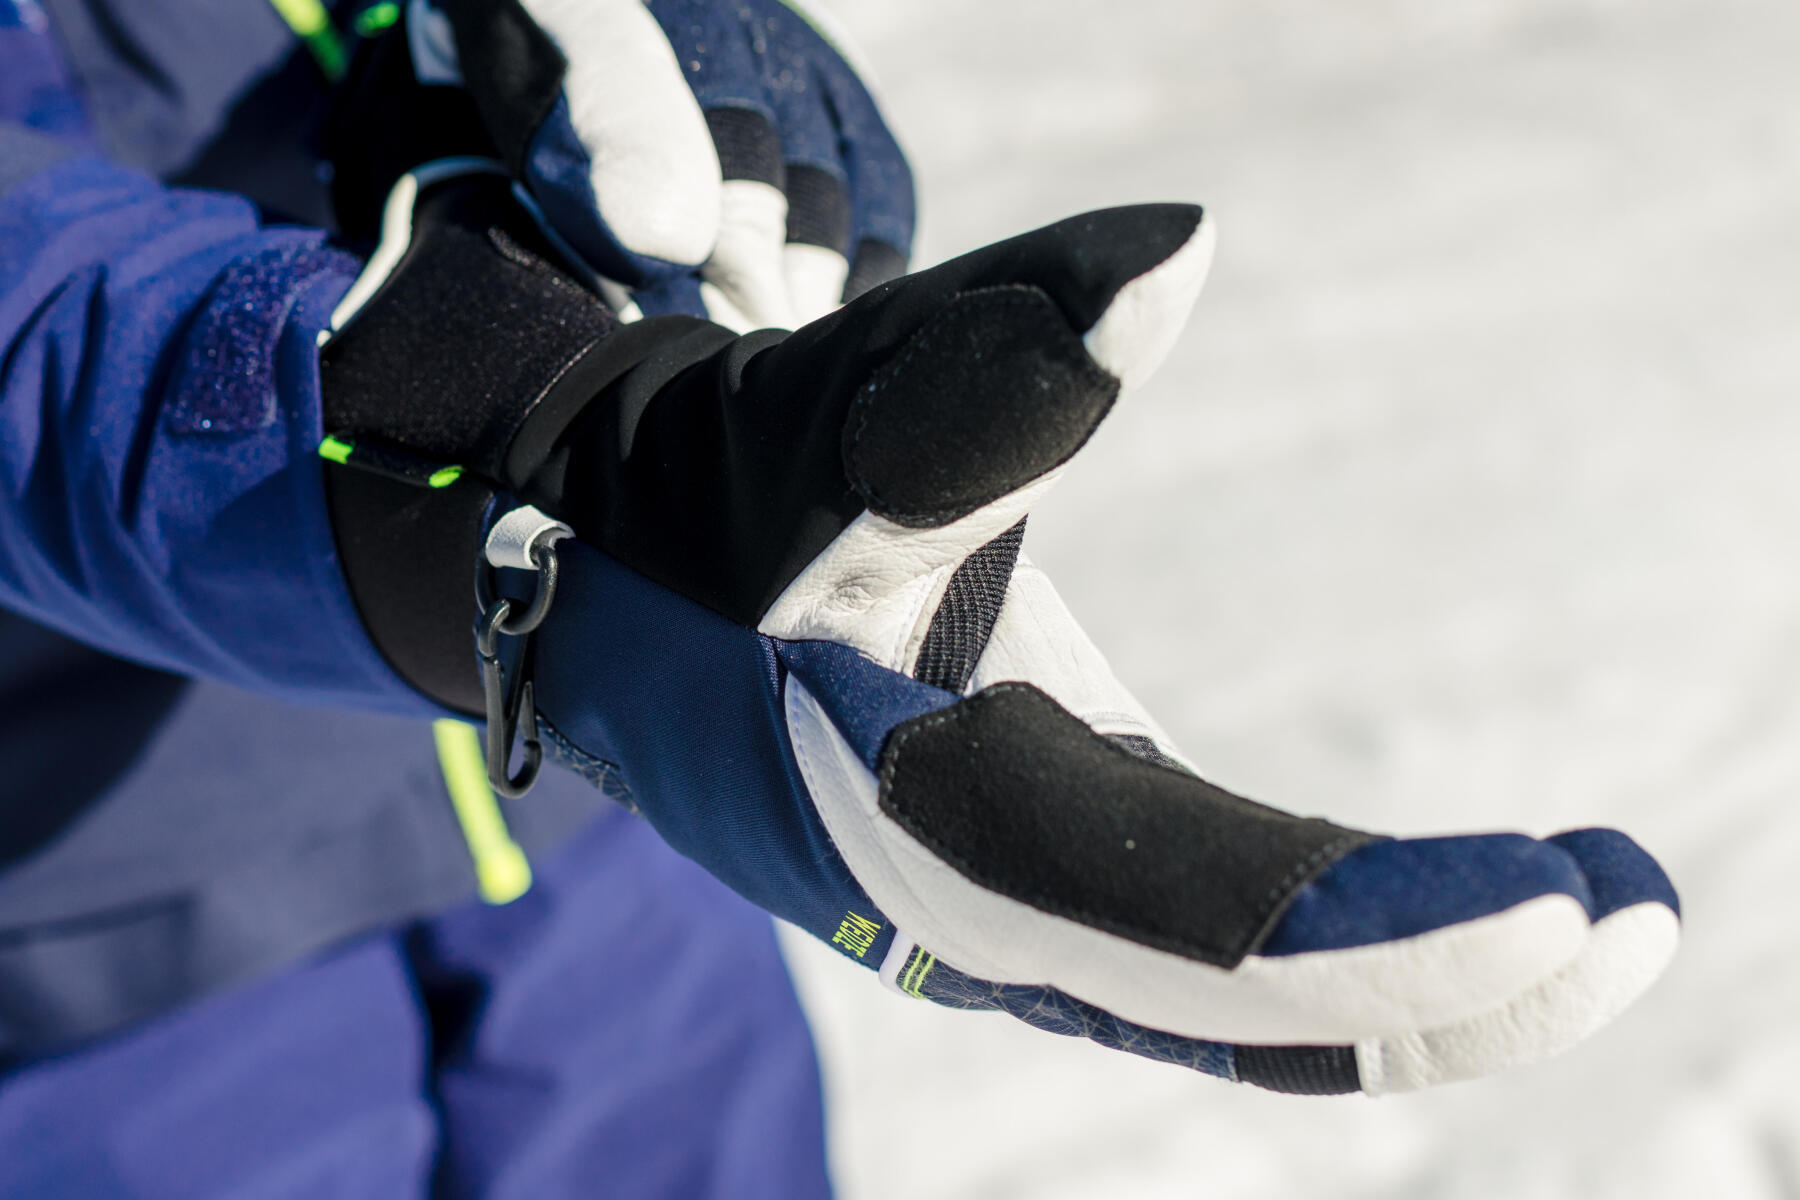 Come scegliere guanti o muffole da sci?